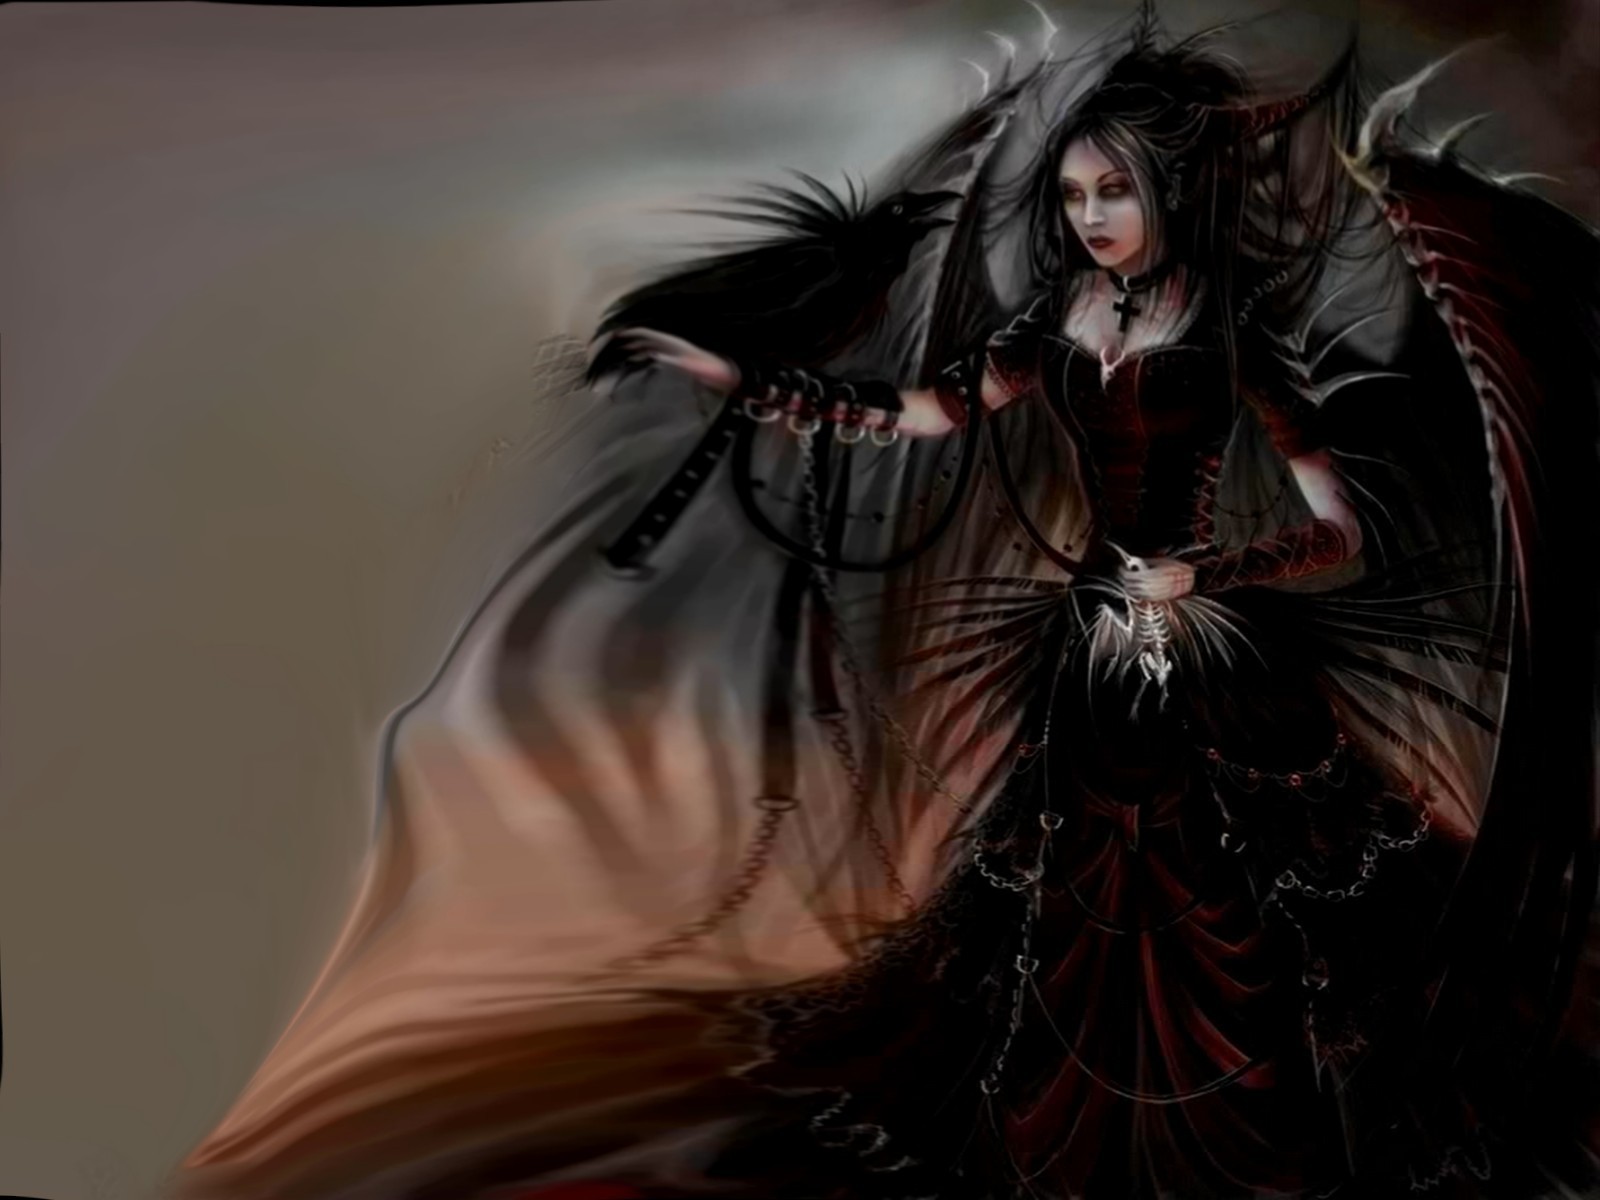 papel pintado de hadas gótico,cg artwork,demonio,personaje de ficción,oscuridad,cabello negro